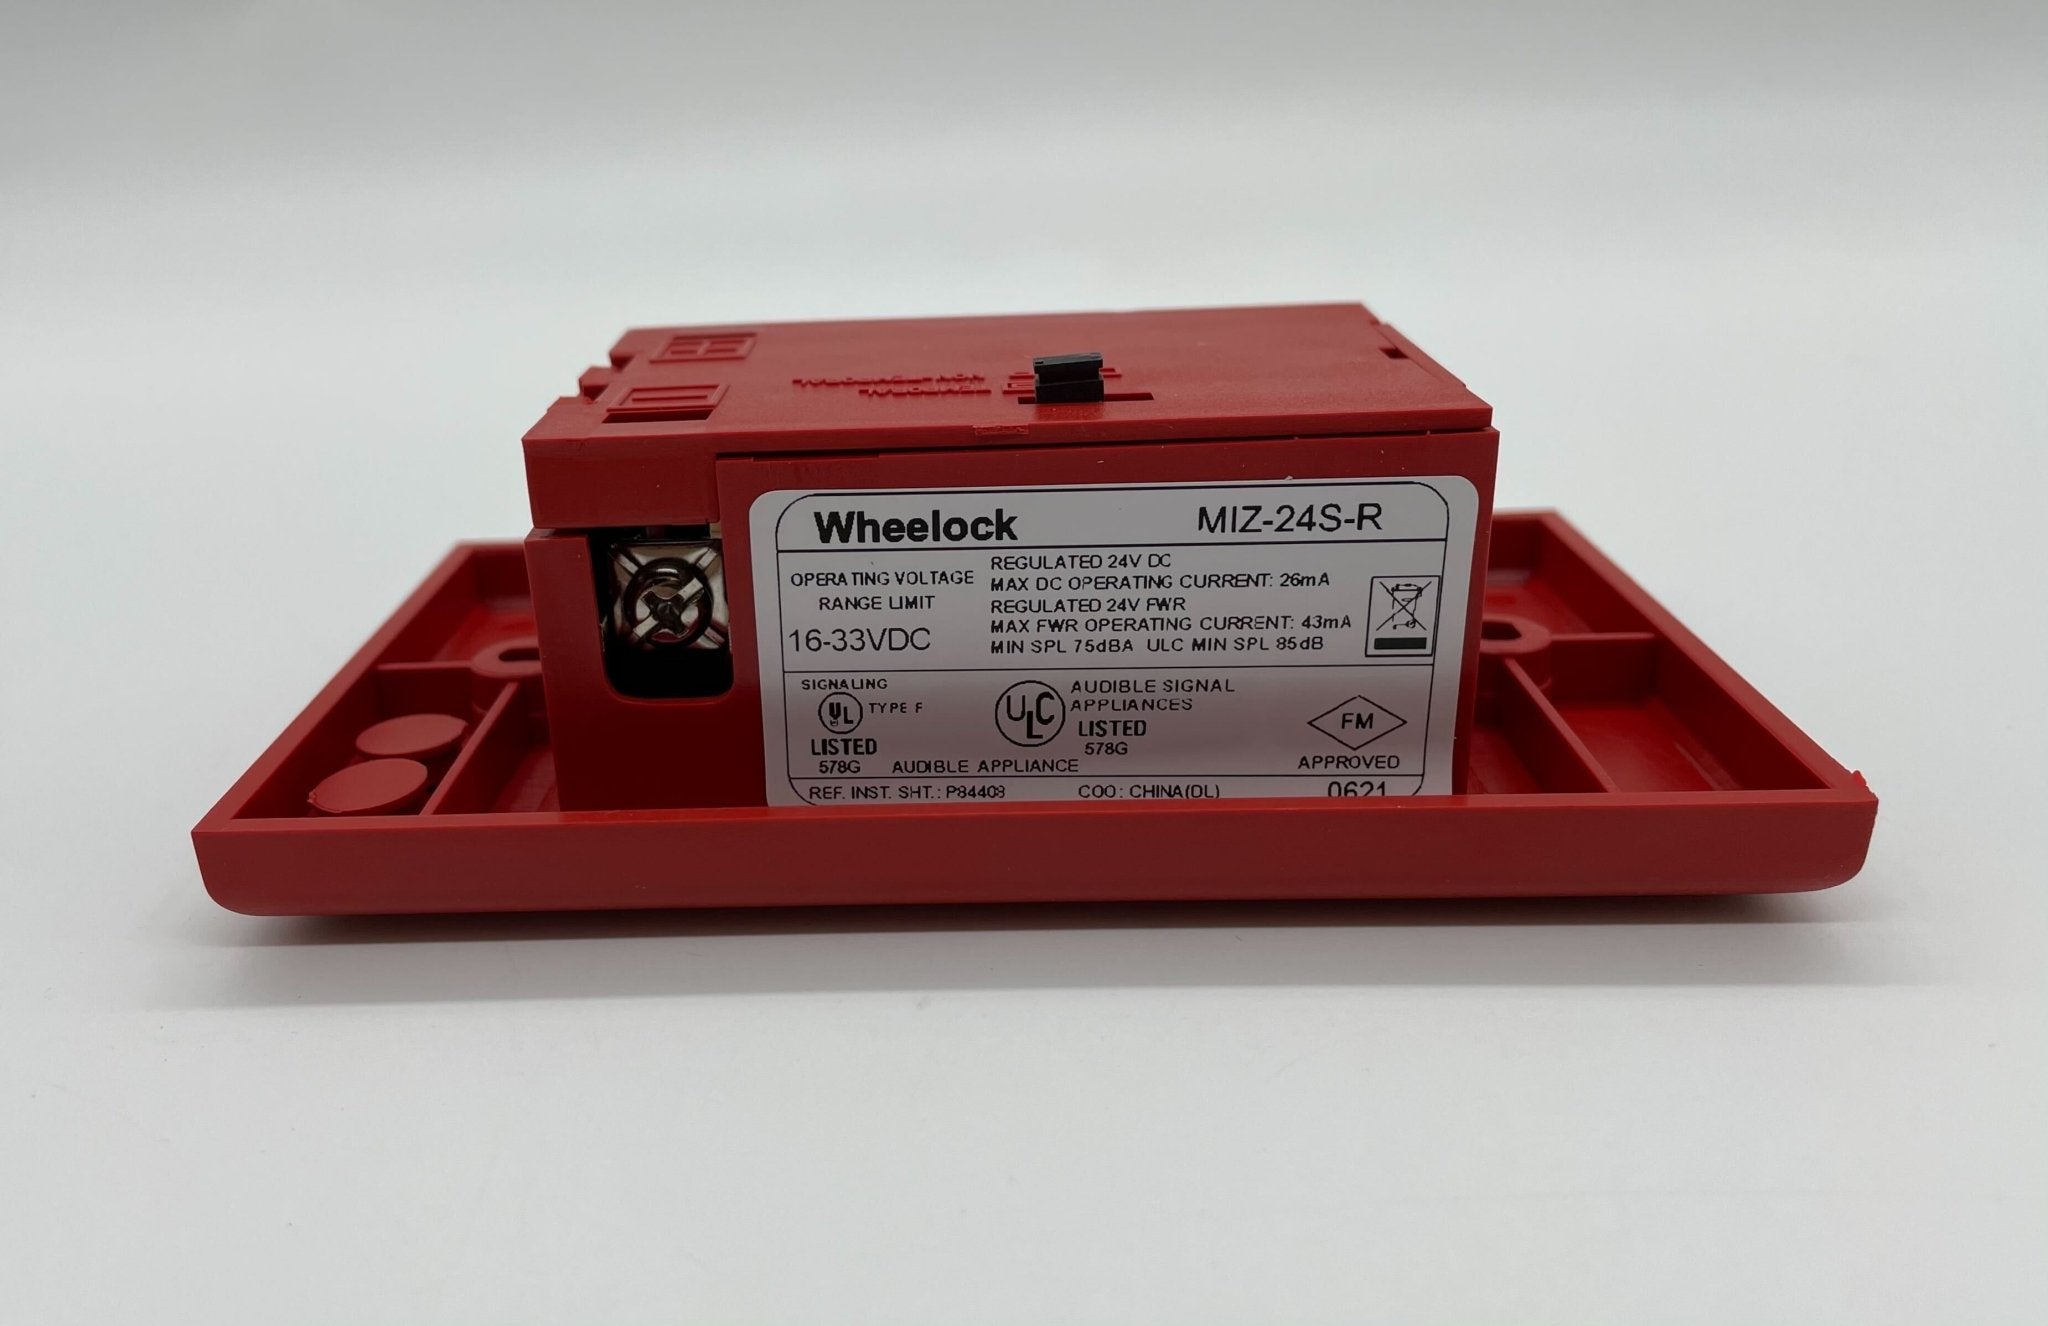 Wheelock MIZ-24S-R - The Fire Alarm Supplier